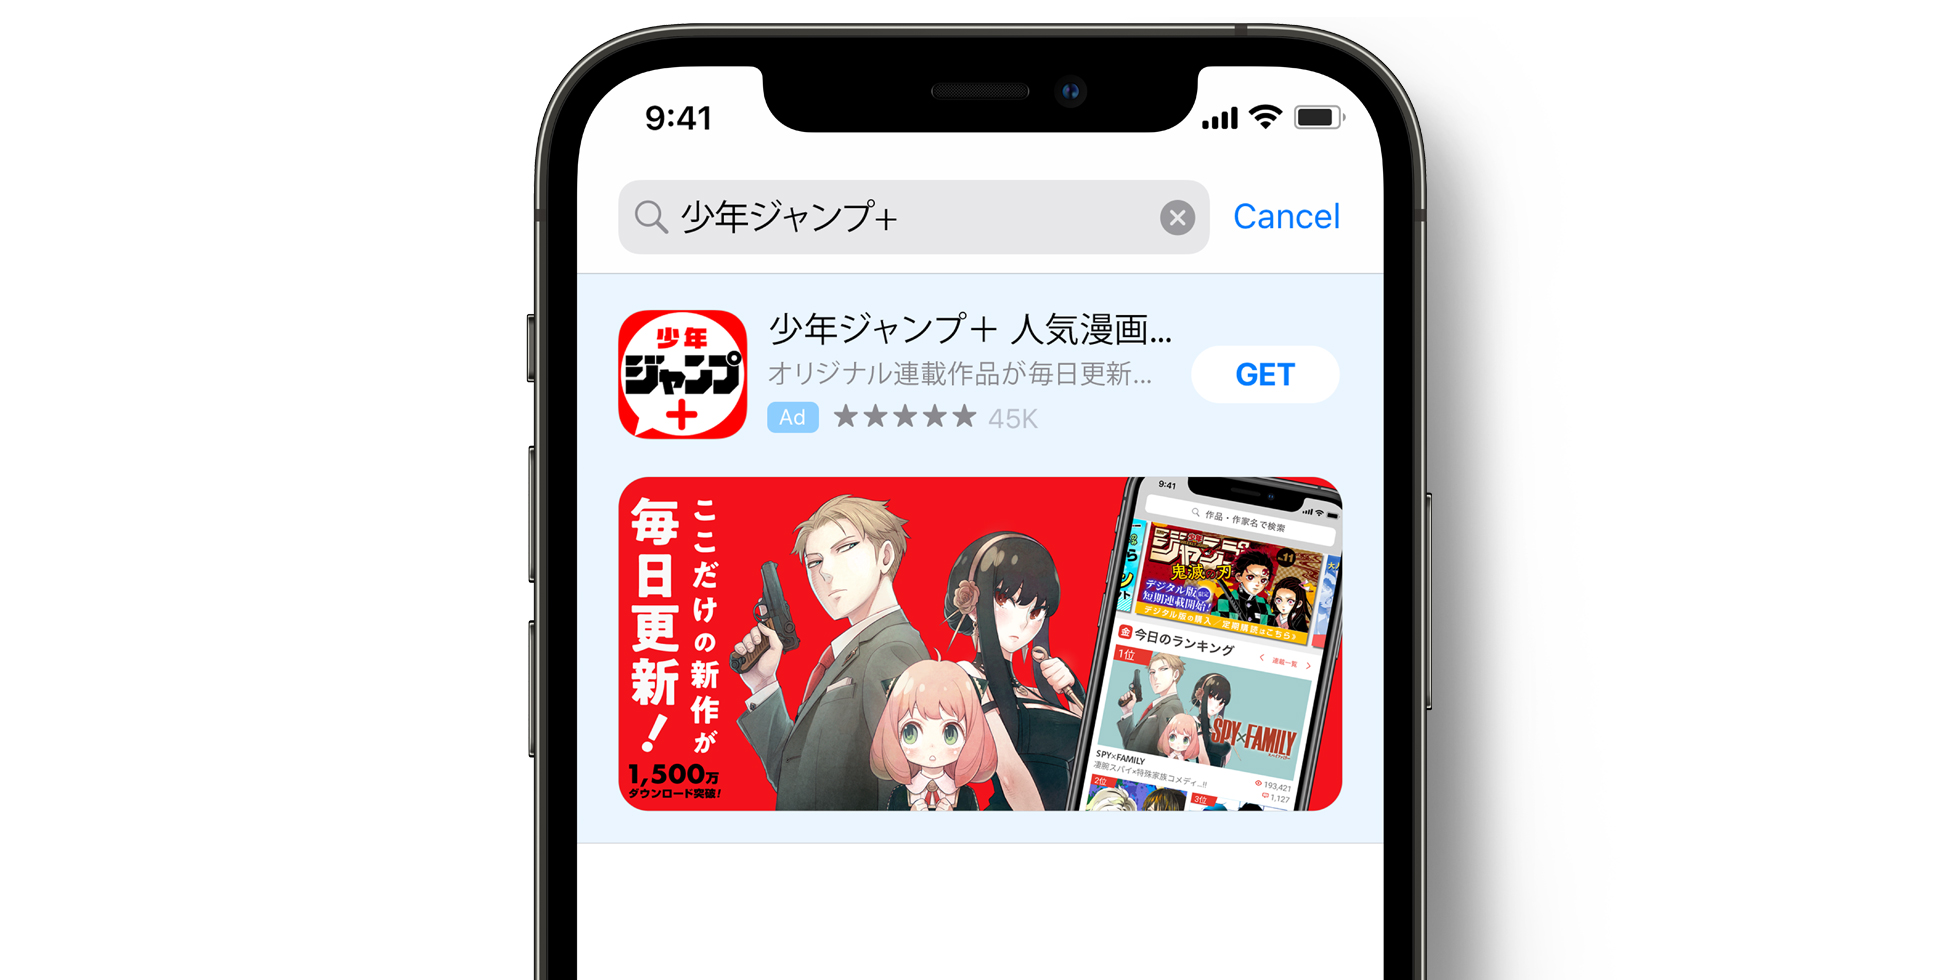 App Store 上的 Shonen Jump+ 广告